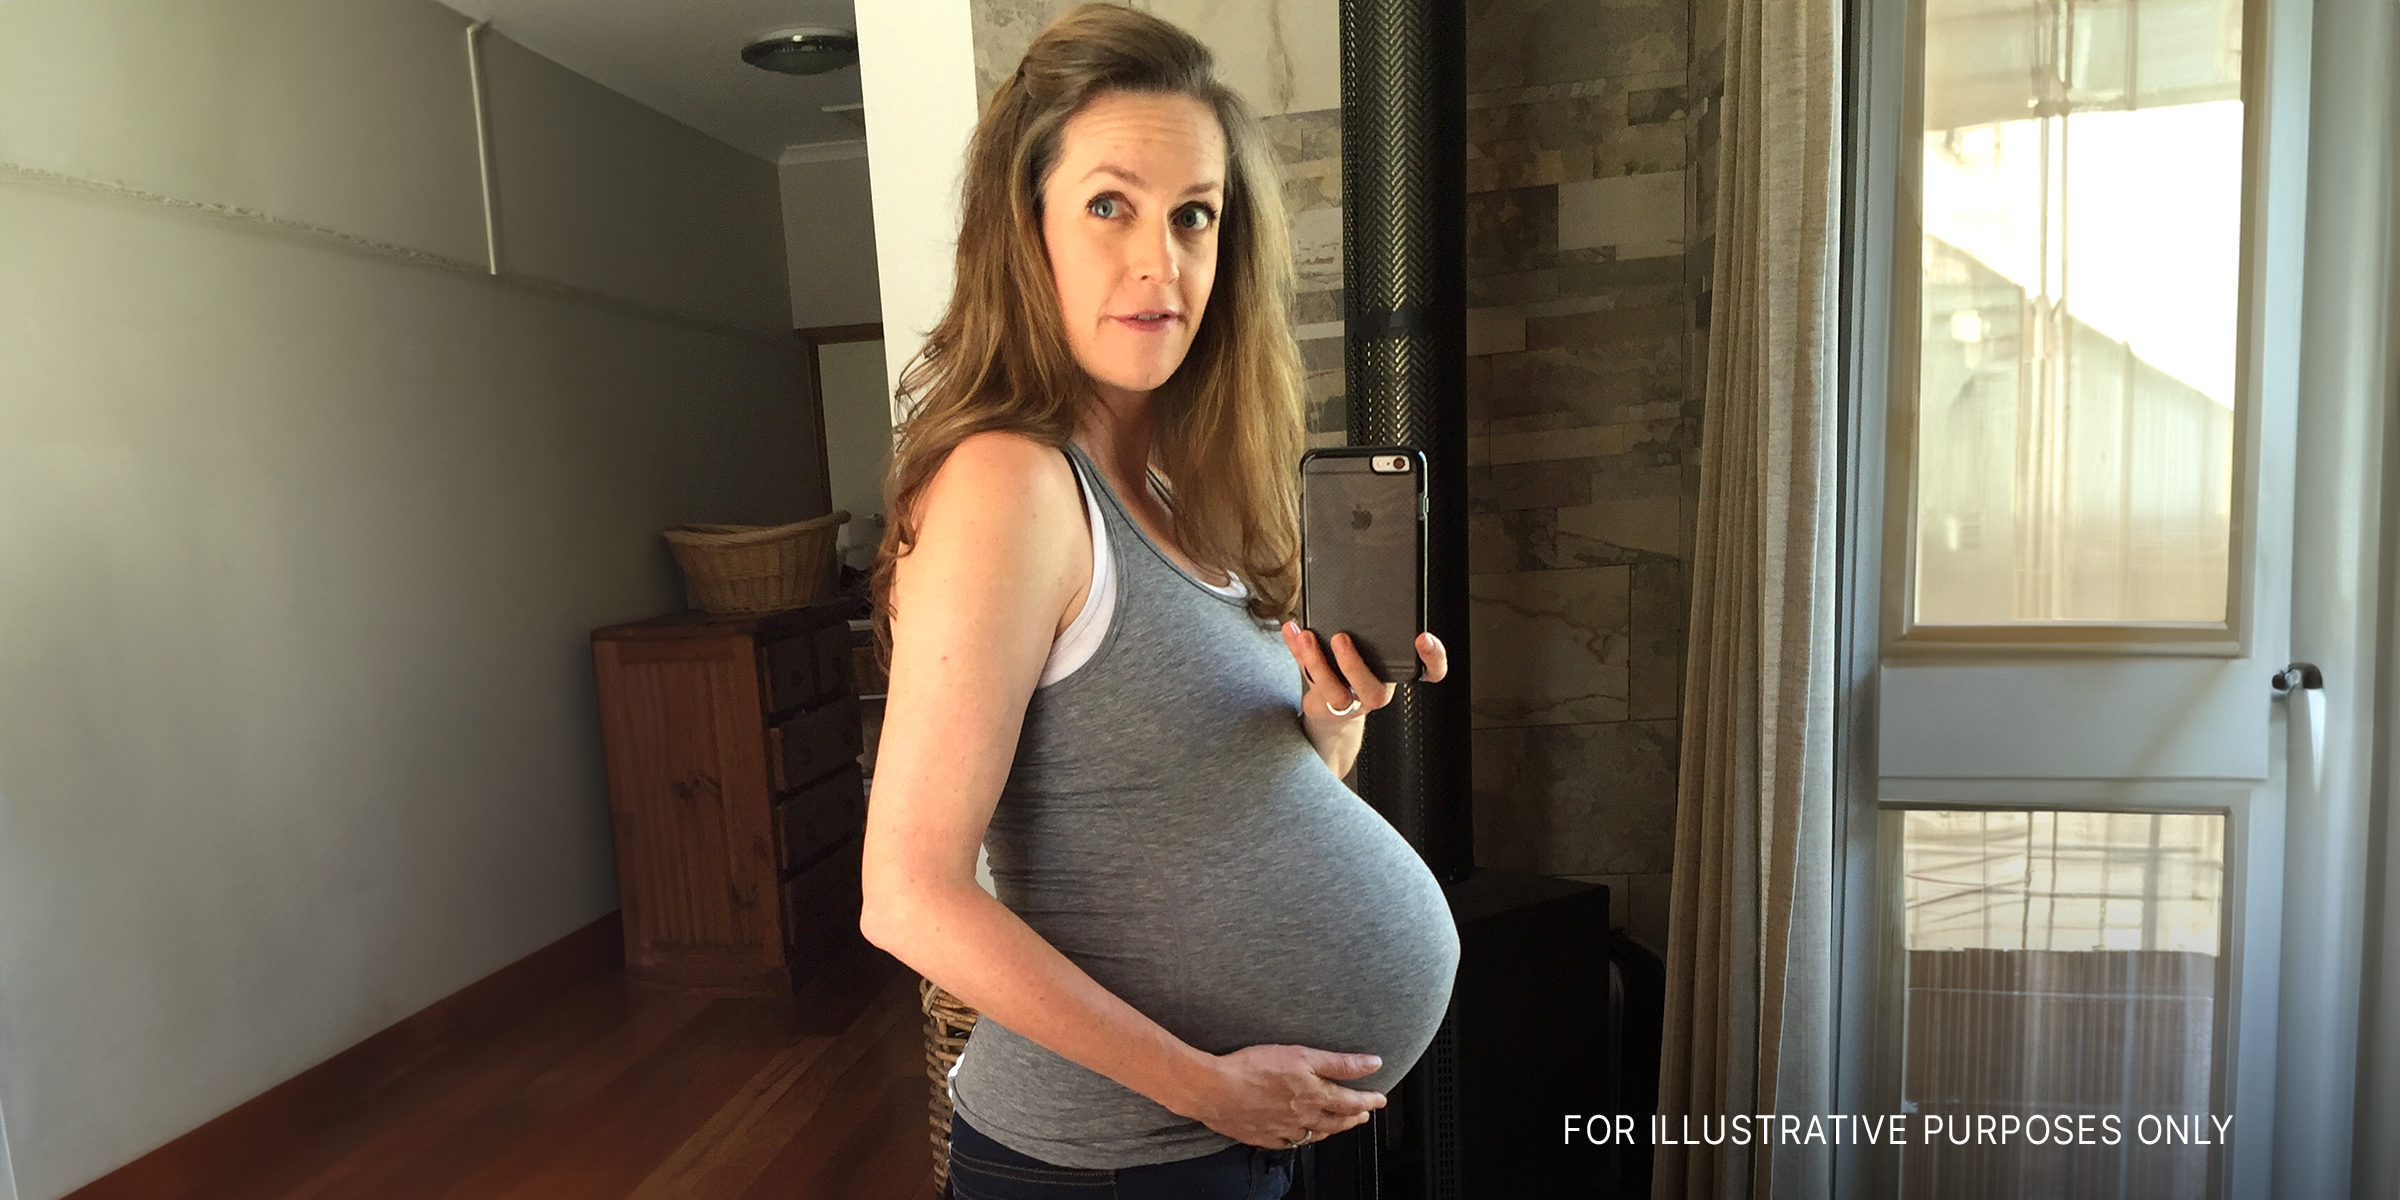 Joven embarazada tomándose una selfie | Foto: Flickr.com/stone-soup (CC BY 2.0)